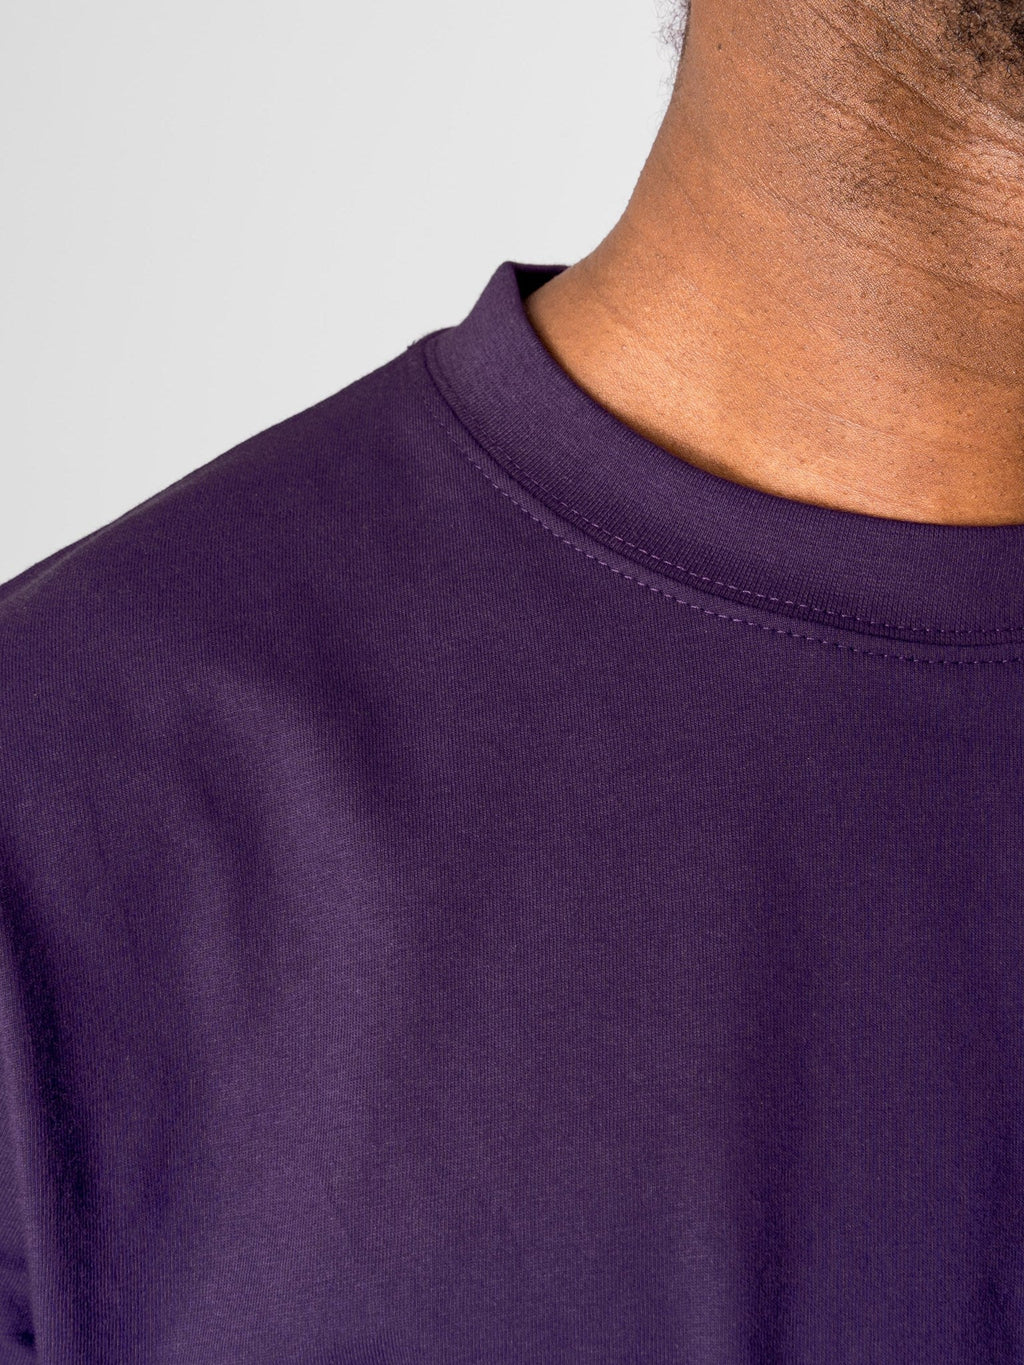 超大T恤 - 紫色